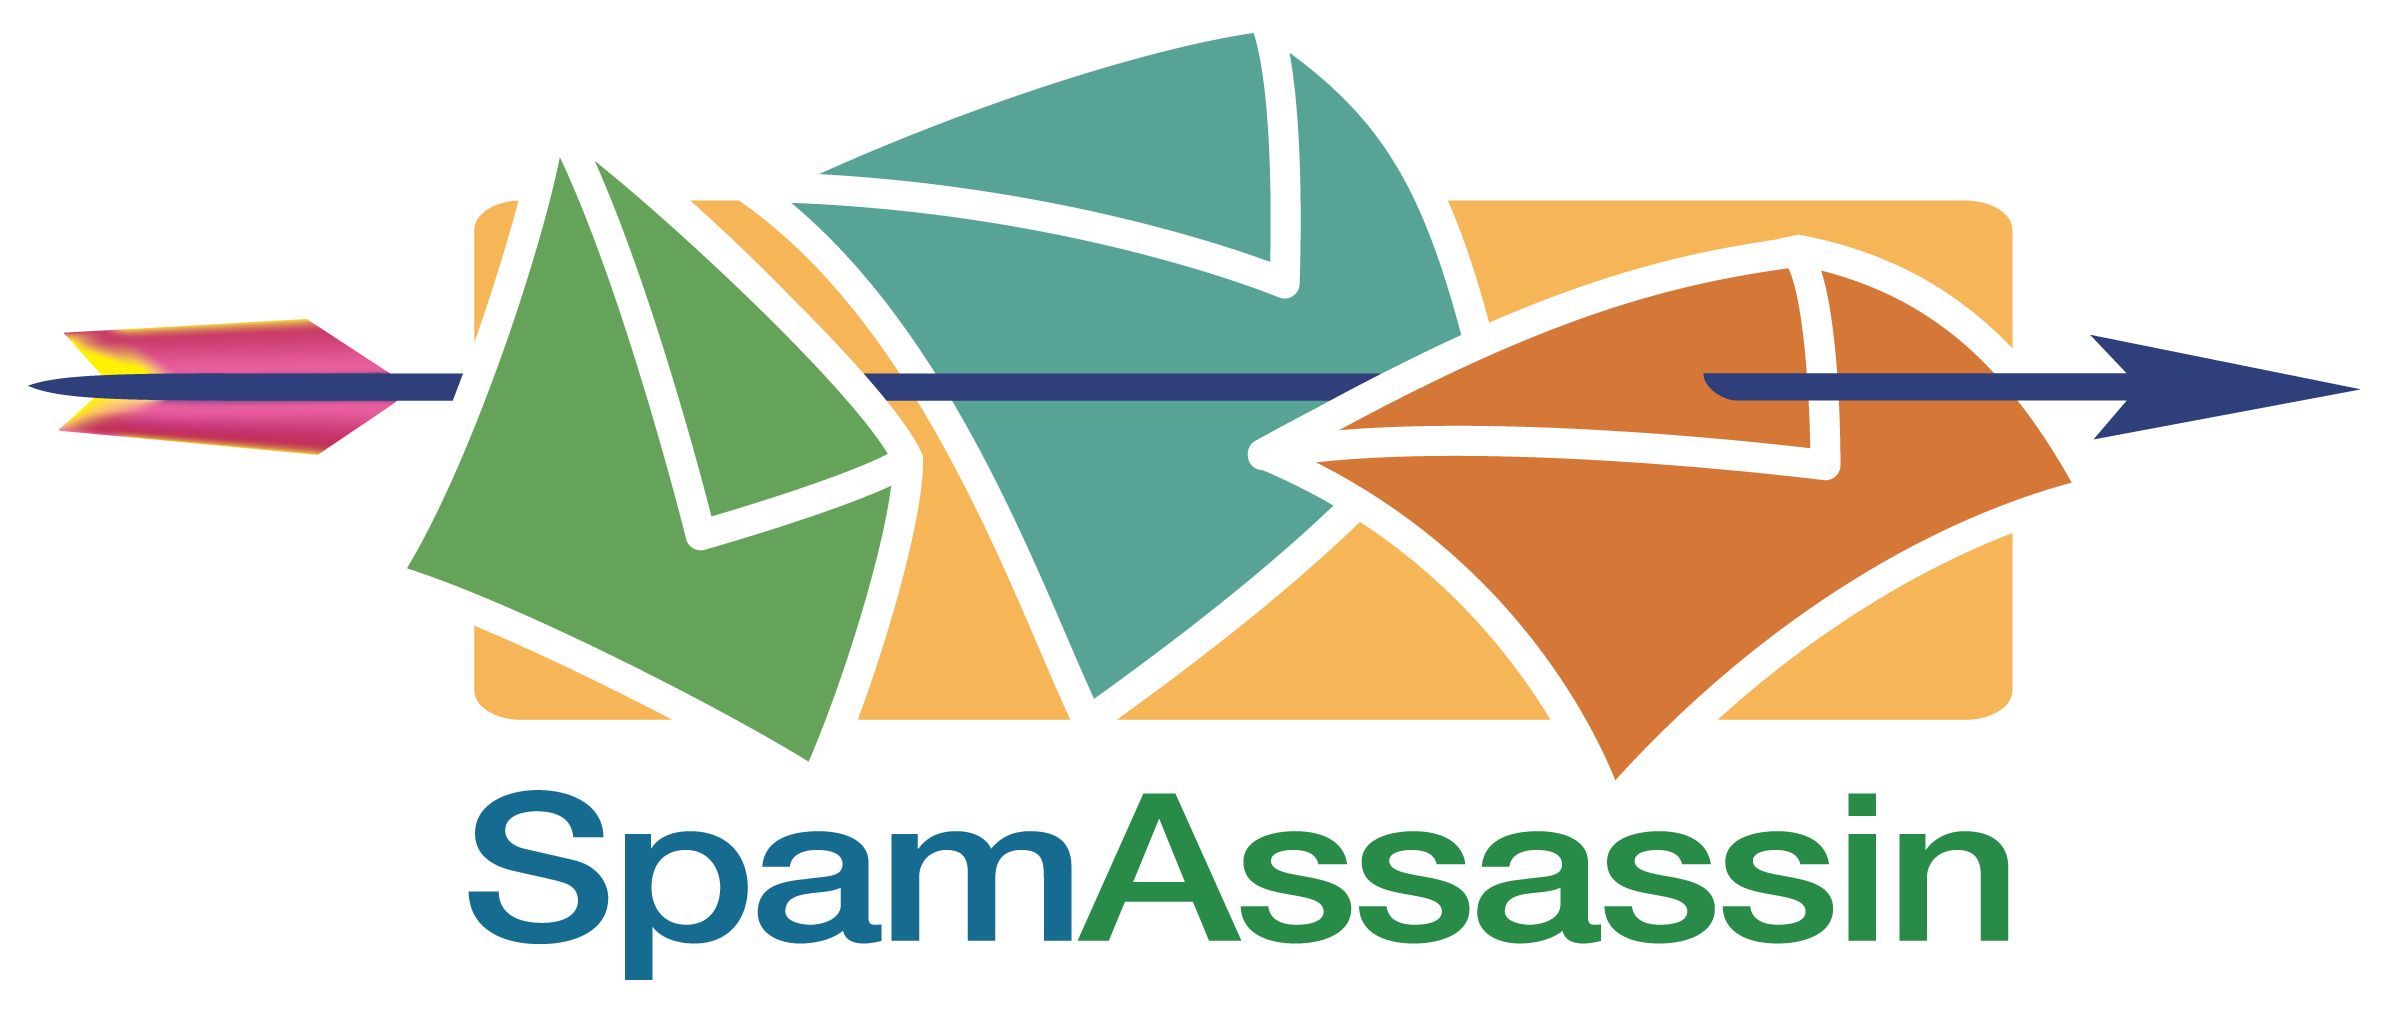 SpamAssassin logo1